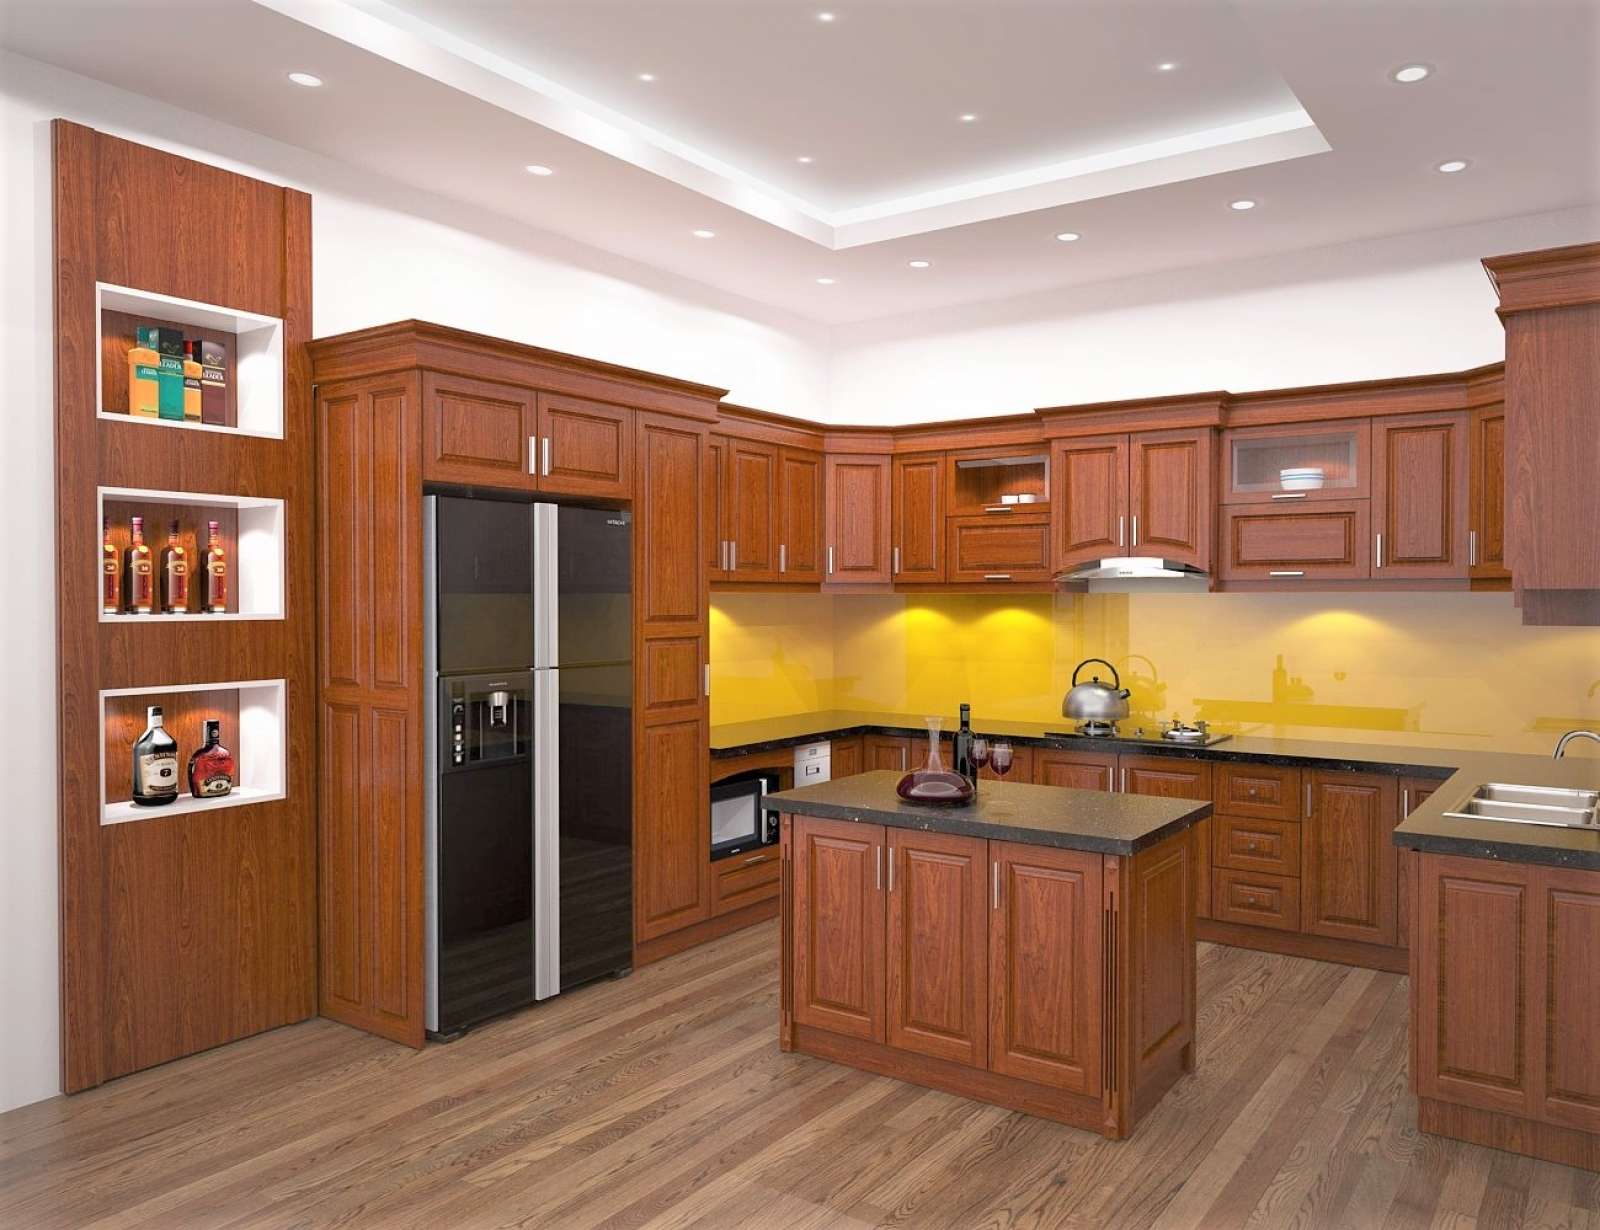 Tủ bếp chữ U hiện đại - Kết hợp màu sắc và vật liệu tinh tế, tạo nên không gian nấu ăn đẳng cấp.